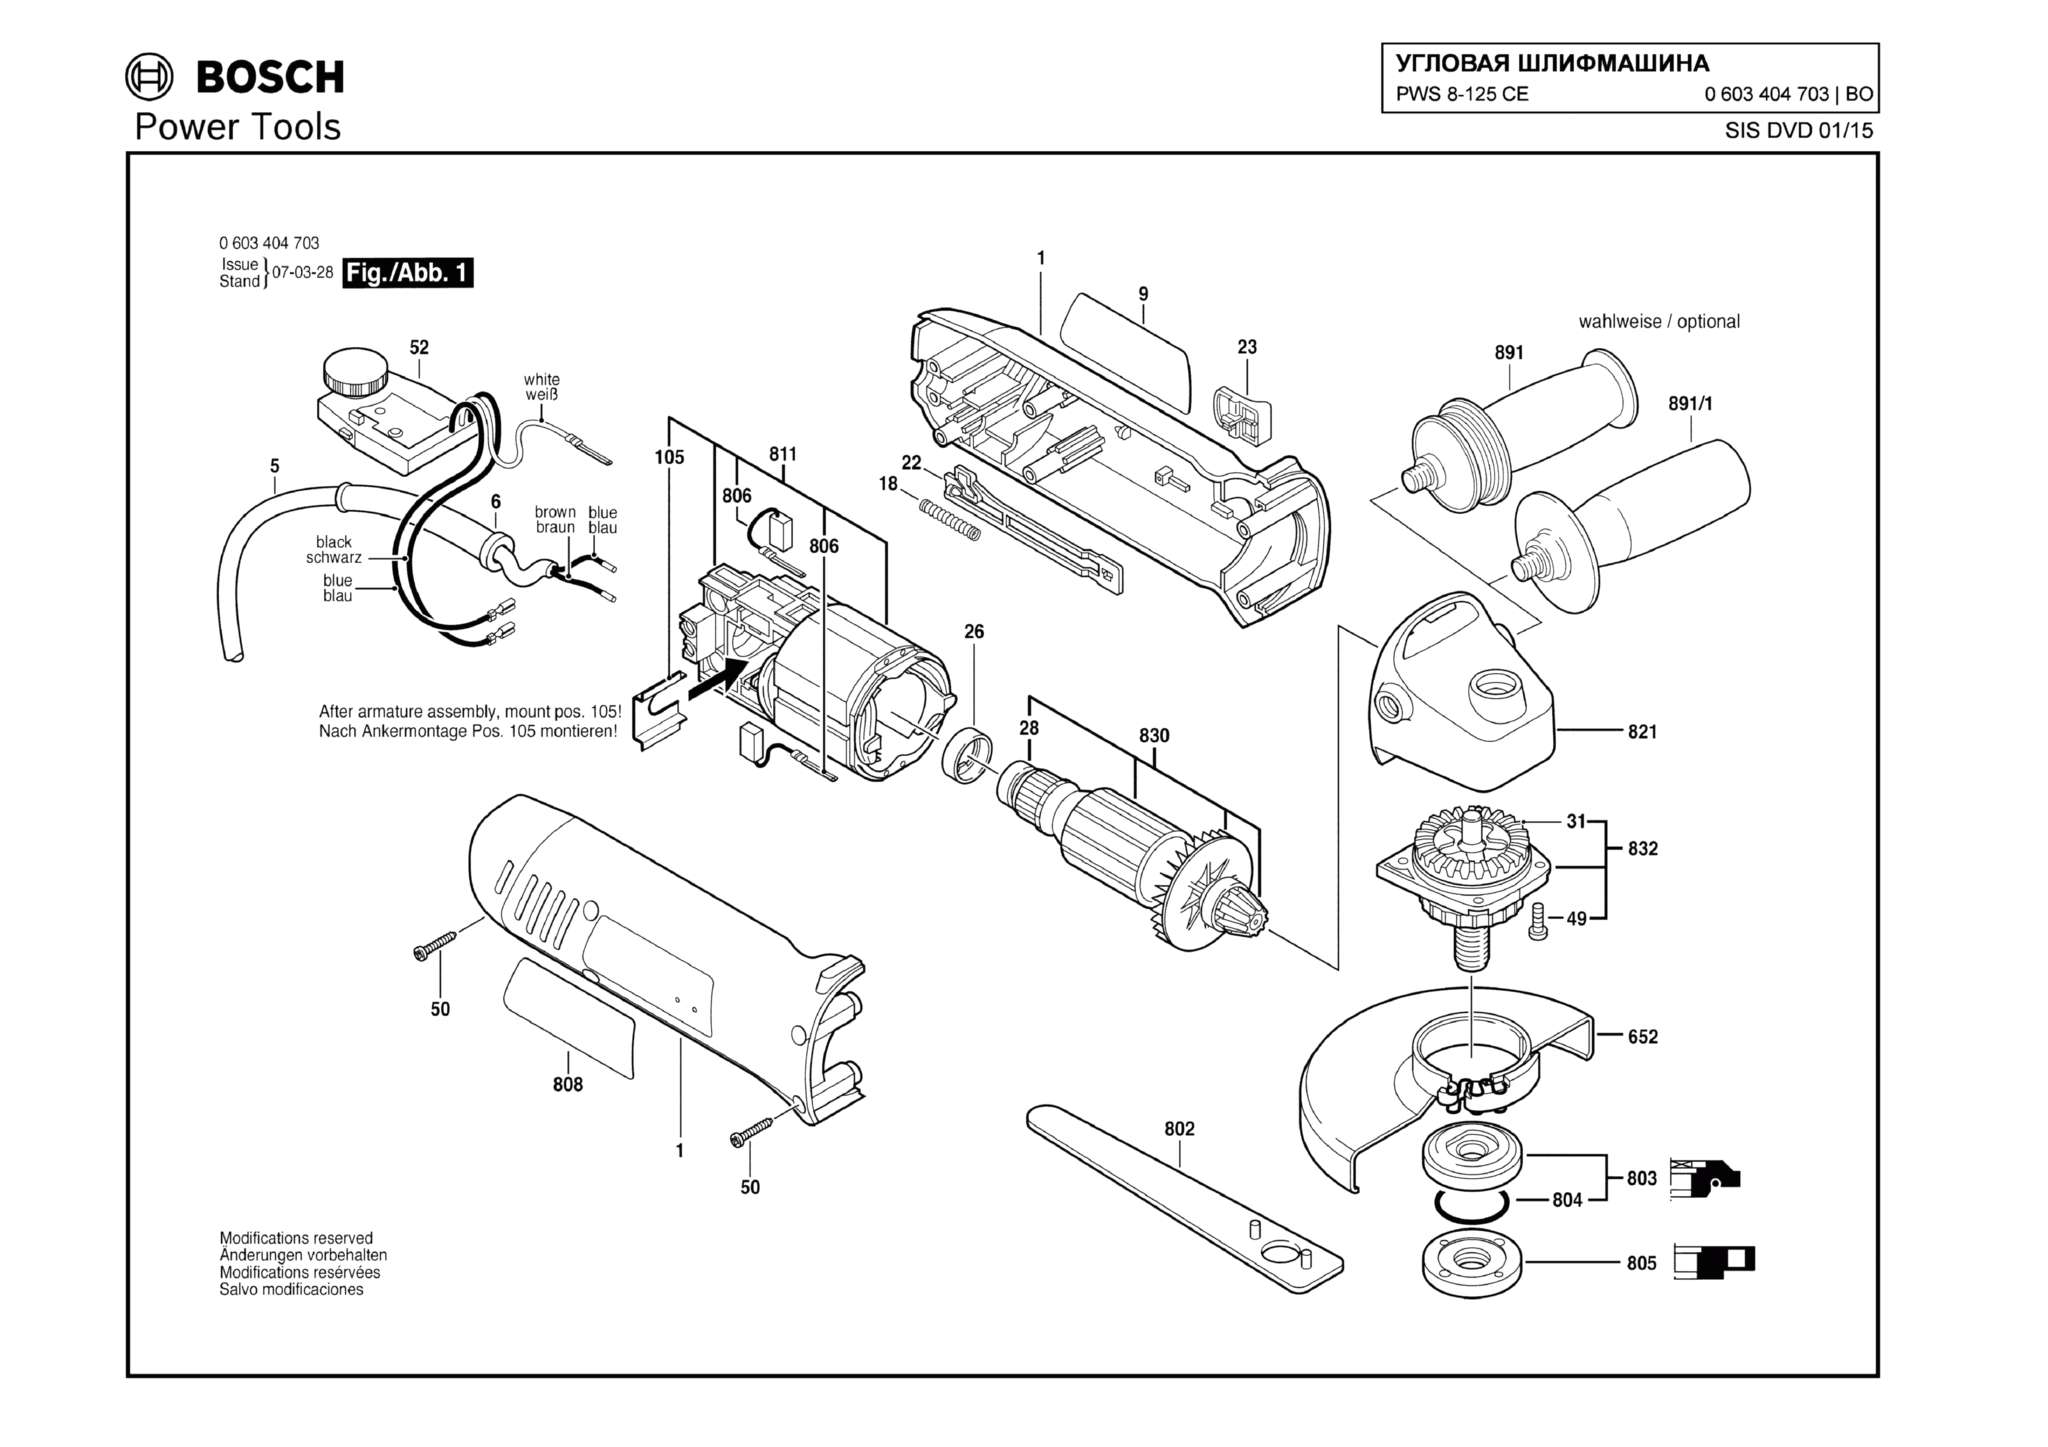 Запчасти, схема и деталировка Bosch PWS 8-125 CE (ТИП 0603404703)